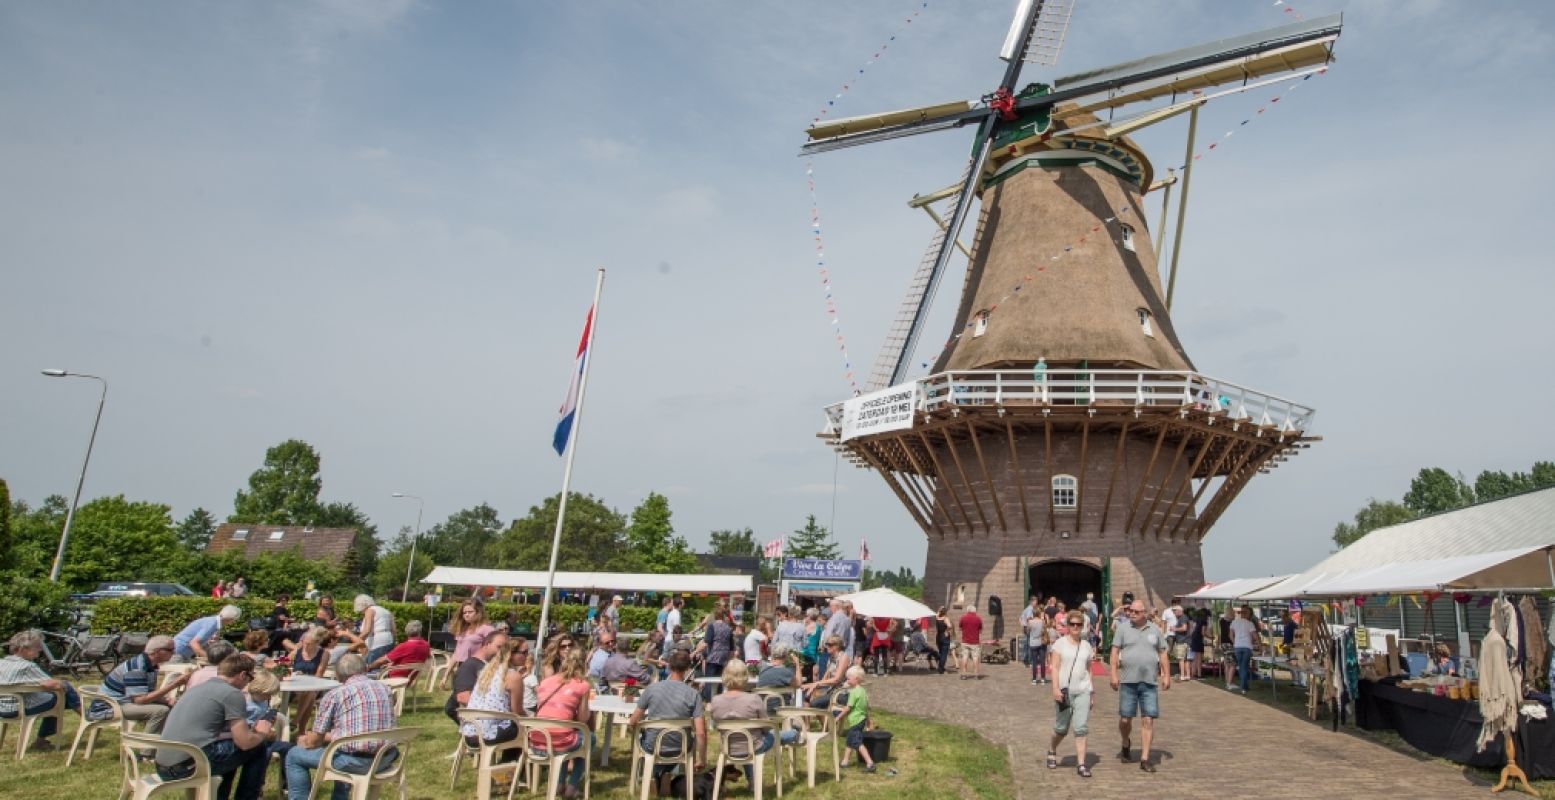 Ruim achthonderd molens spannen hun wieken en openen hun deuren voor een feestelijk dagje uit op 11 en 12 mei. Foto: De Hollandsche Molen © Wim Giebels.